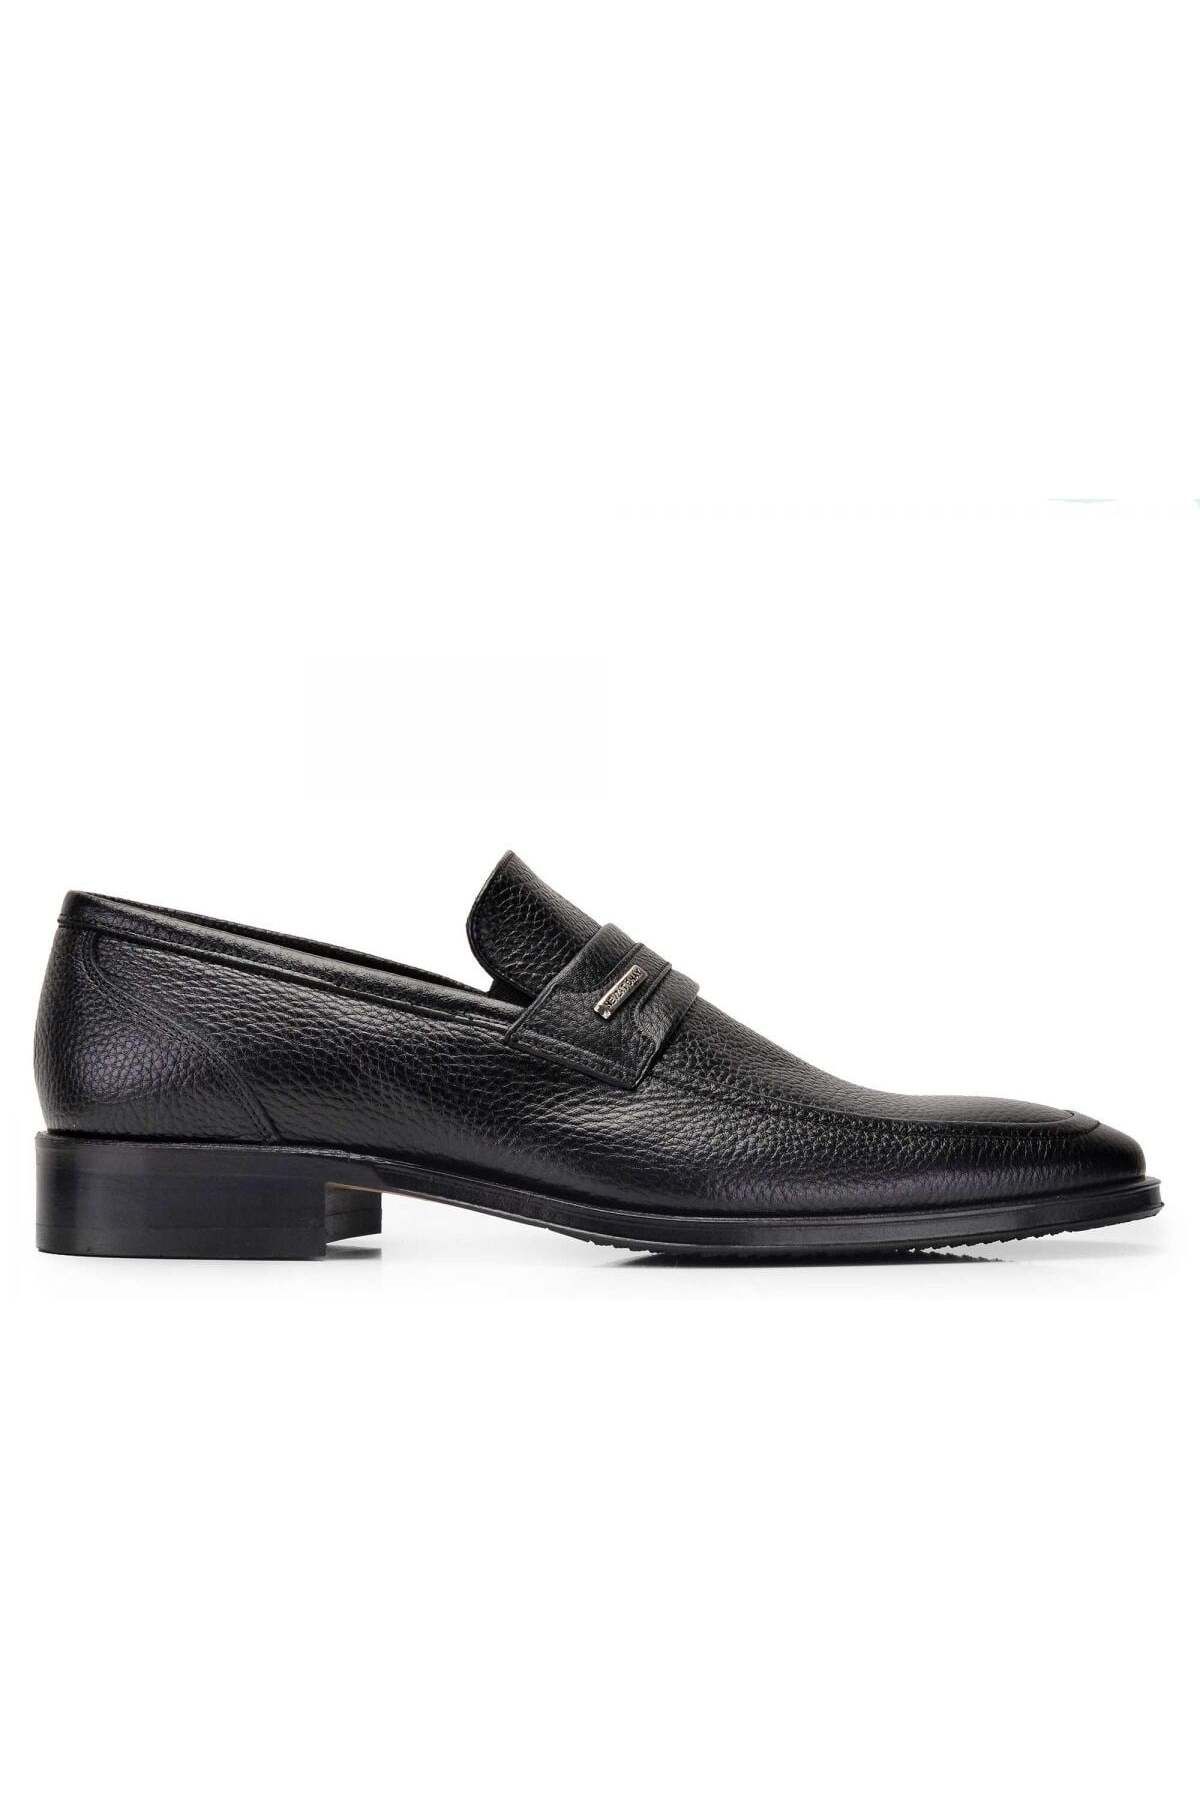 Nevzat Onay Siyah Klasik Loafer Erkek Ayakkabı -10453-